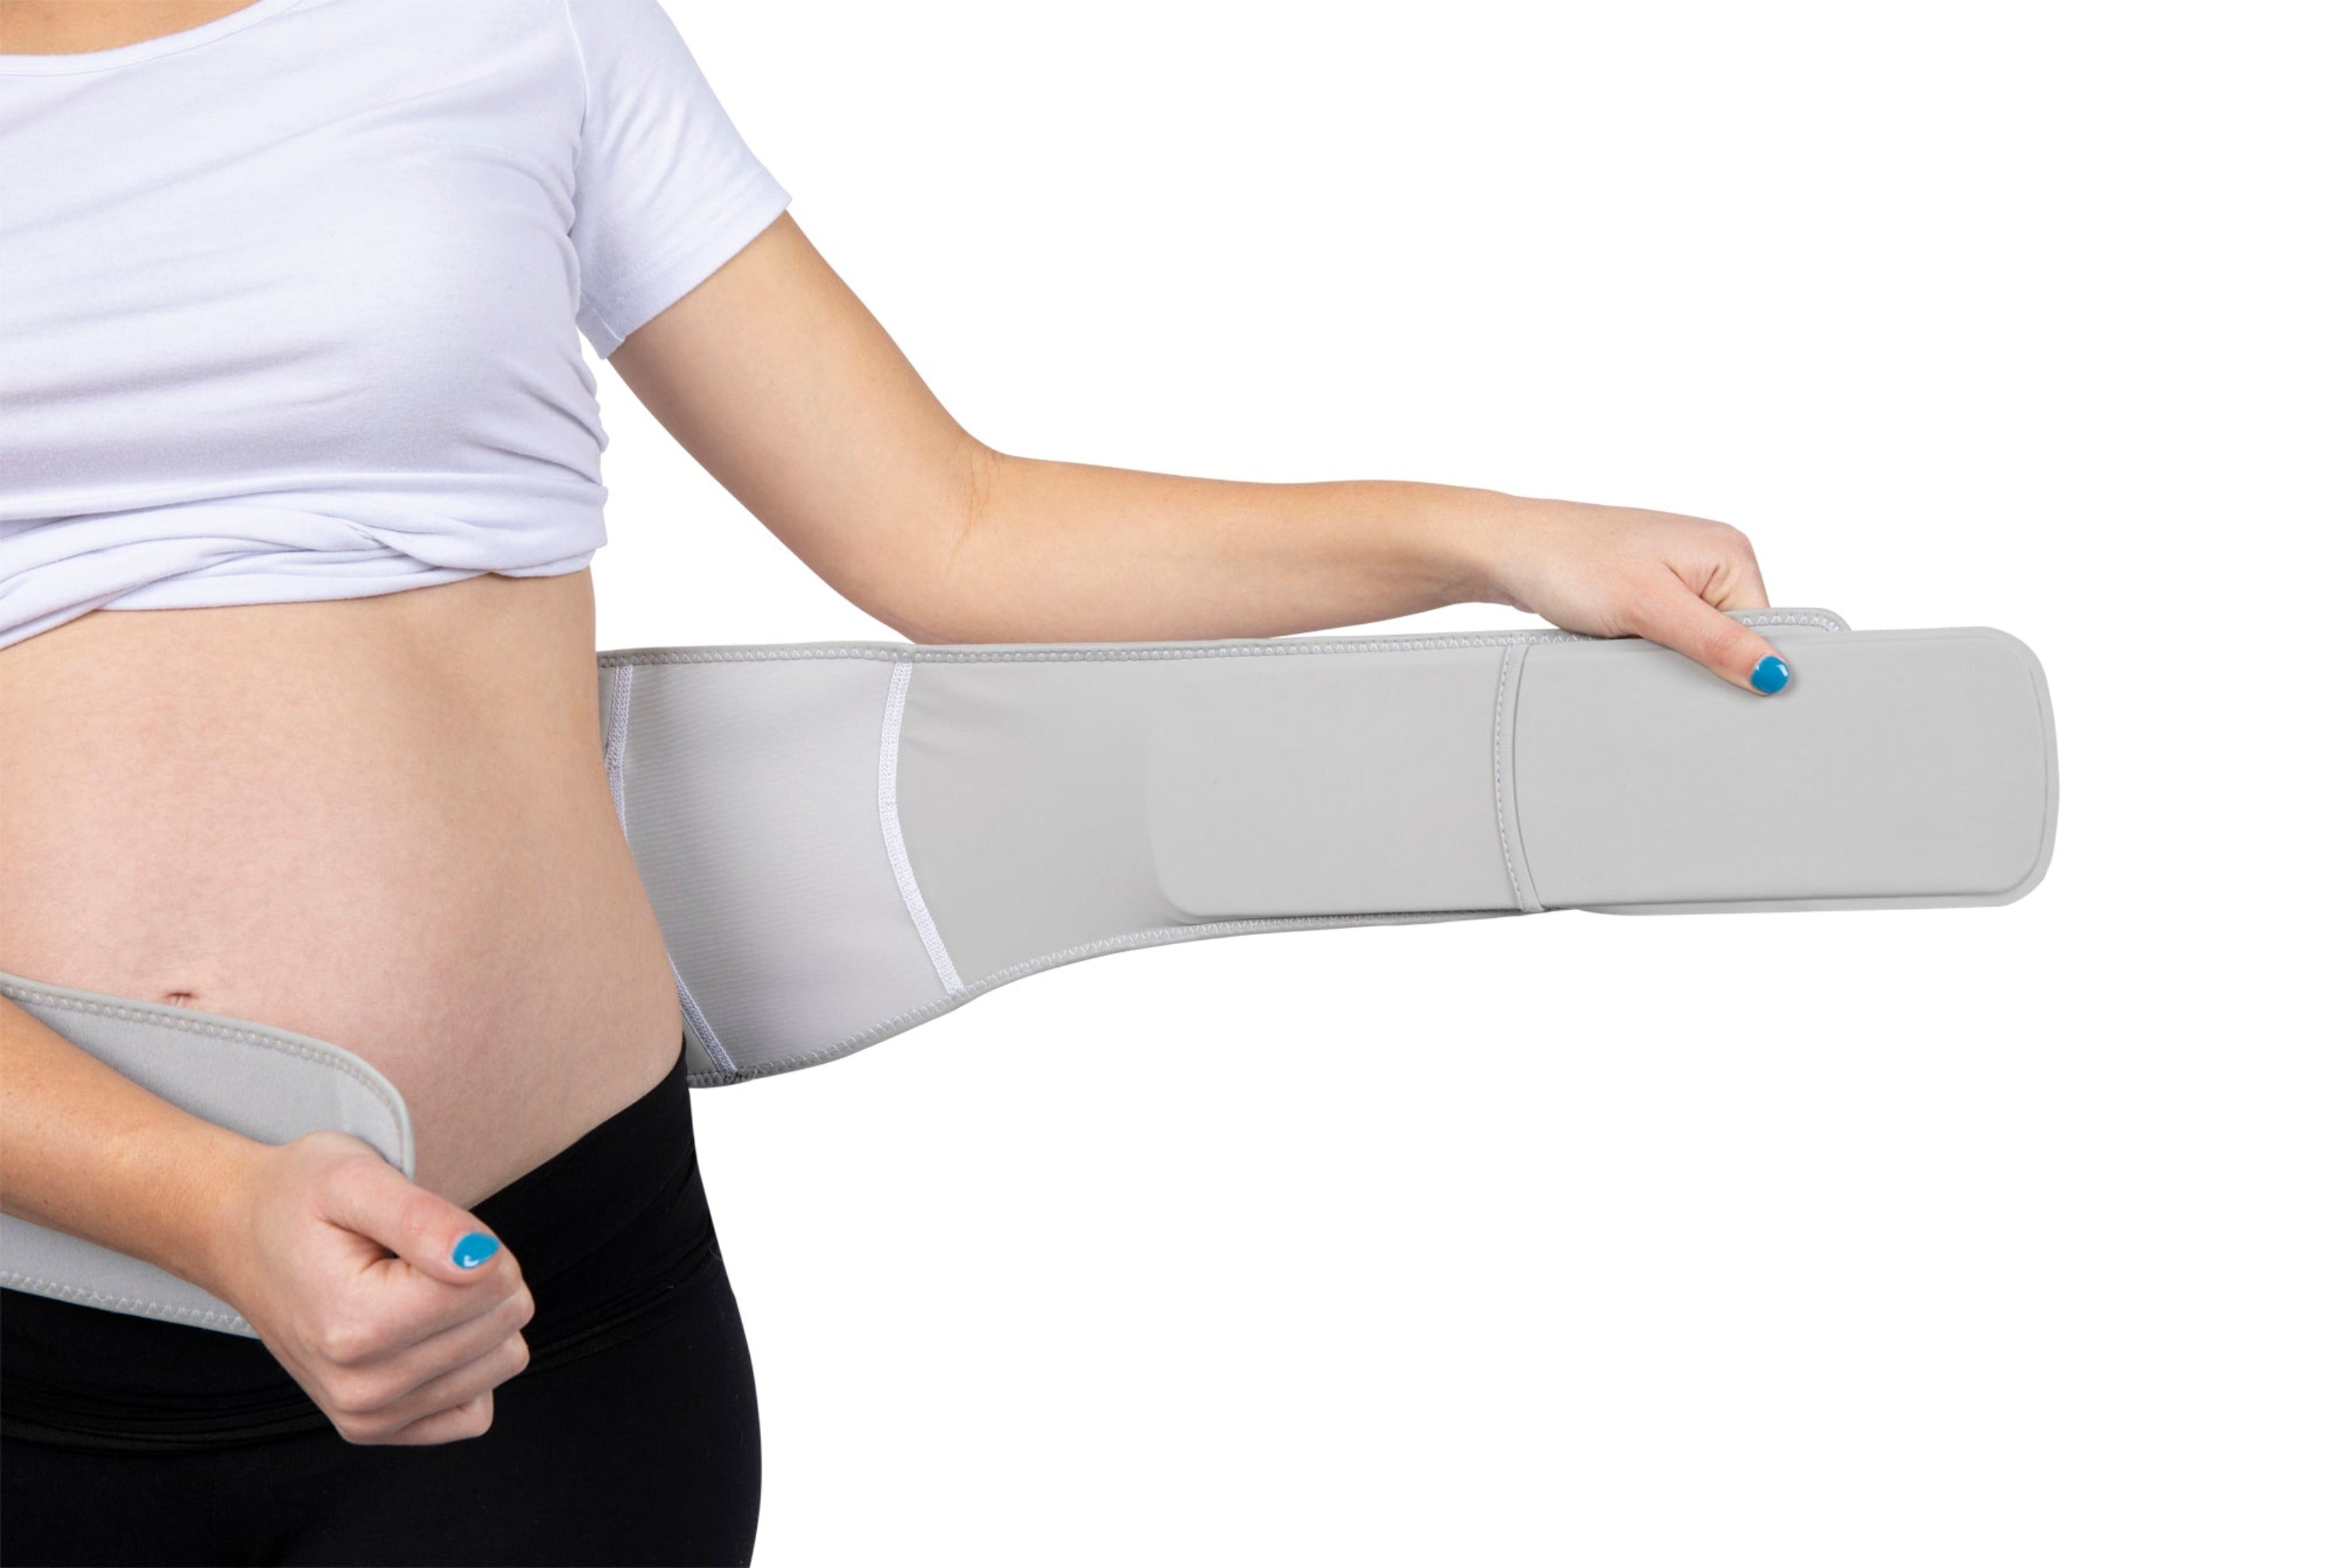 Nucarture pregnancy belt after delivery ,maternity belt after